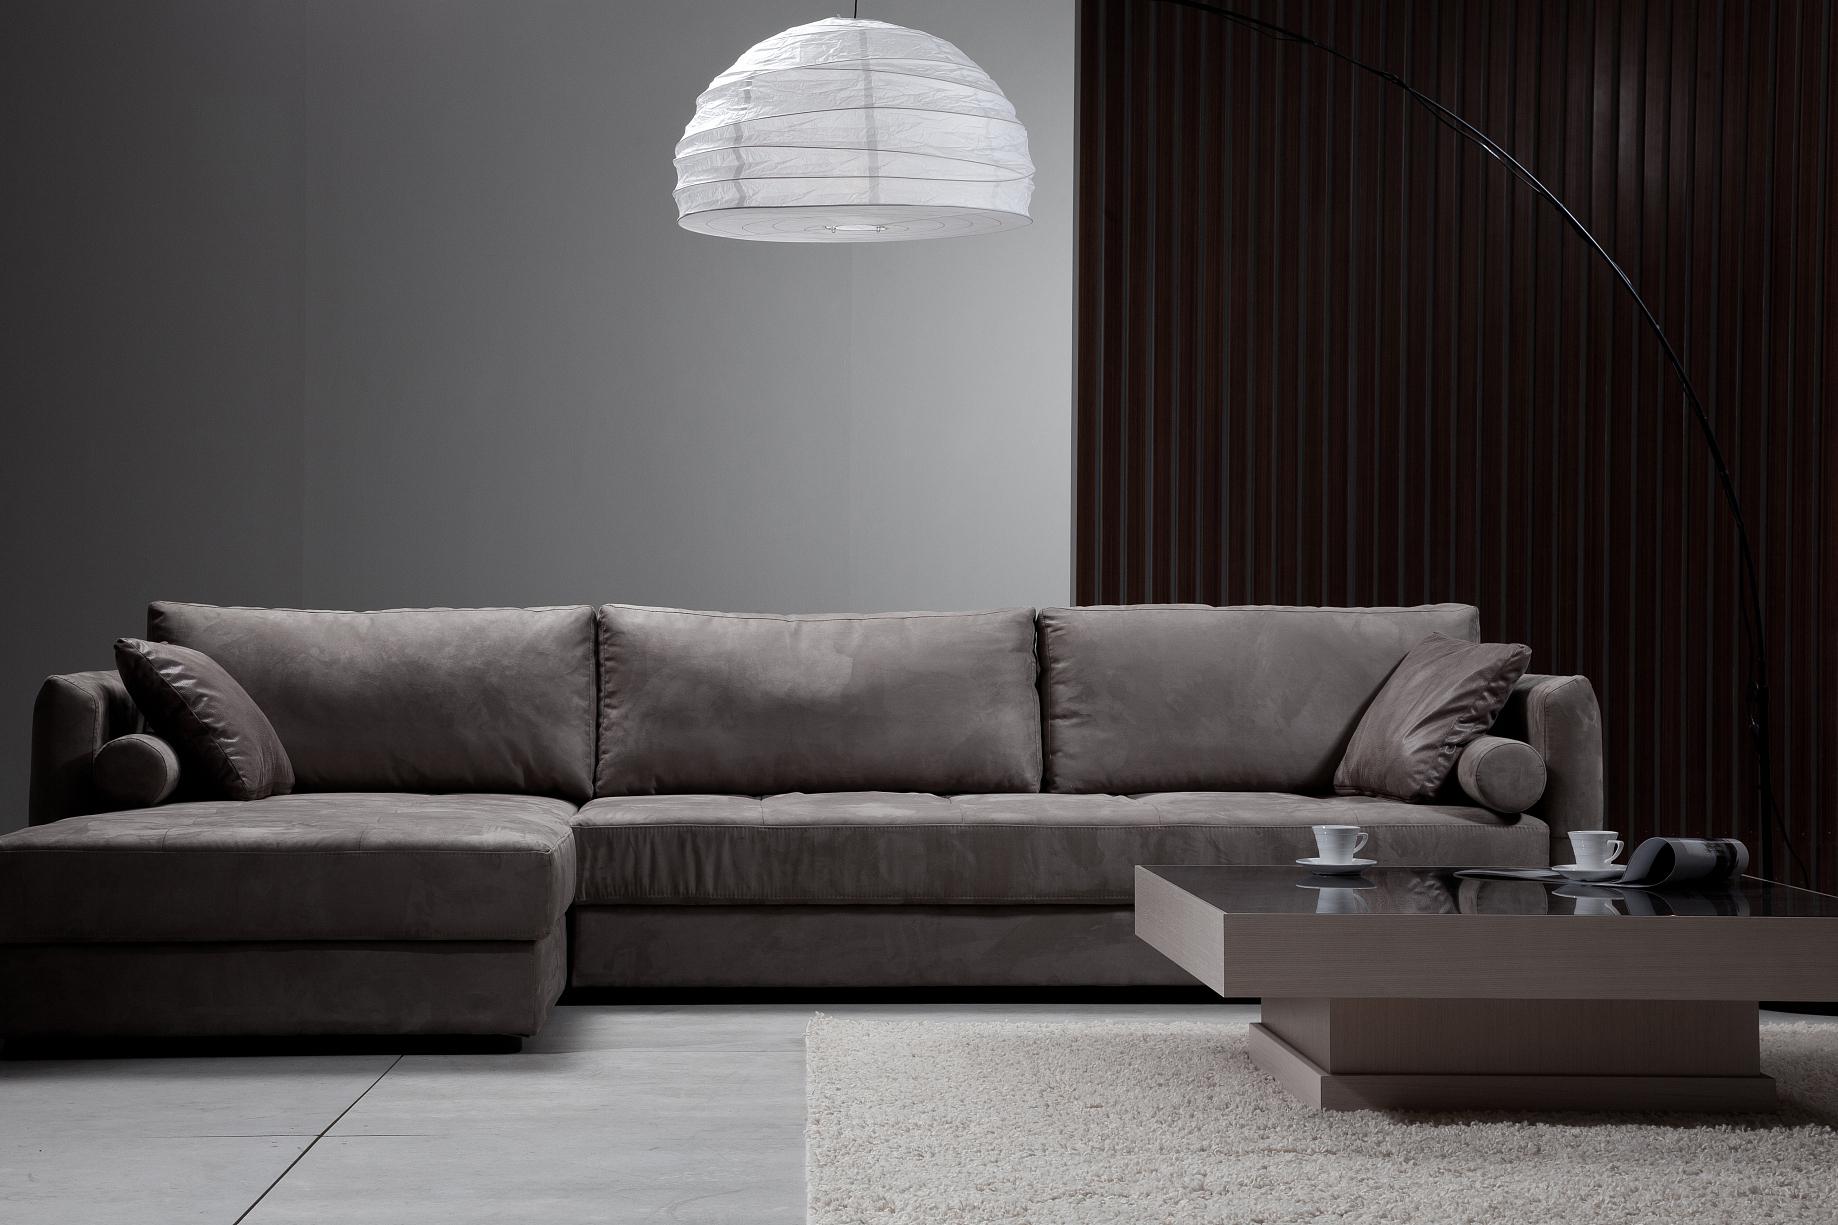 家居美学探索:深灰色沙发的时尚垫色搭配 深灰色沙发是客厅的焦点